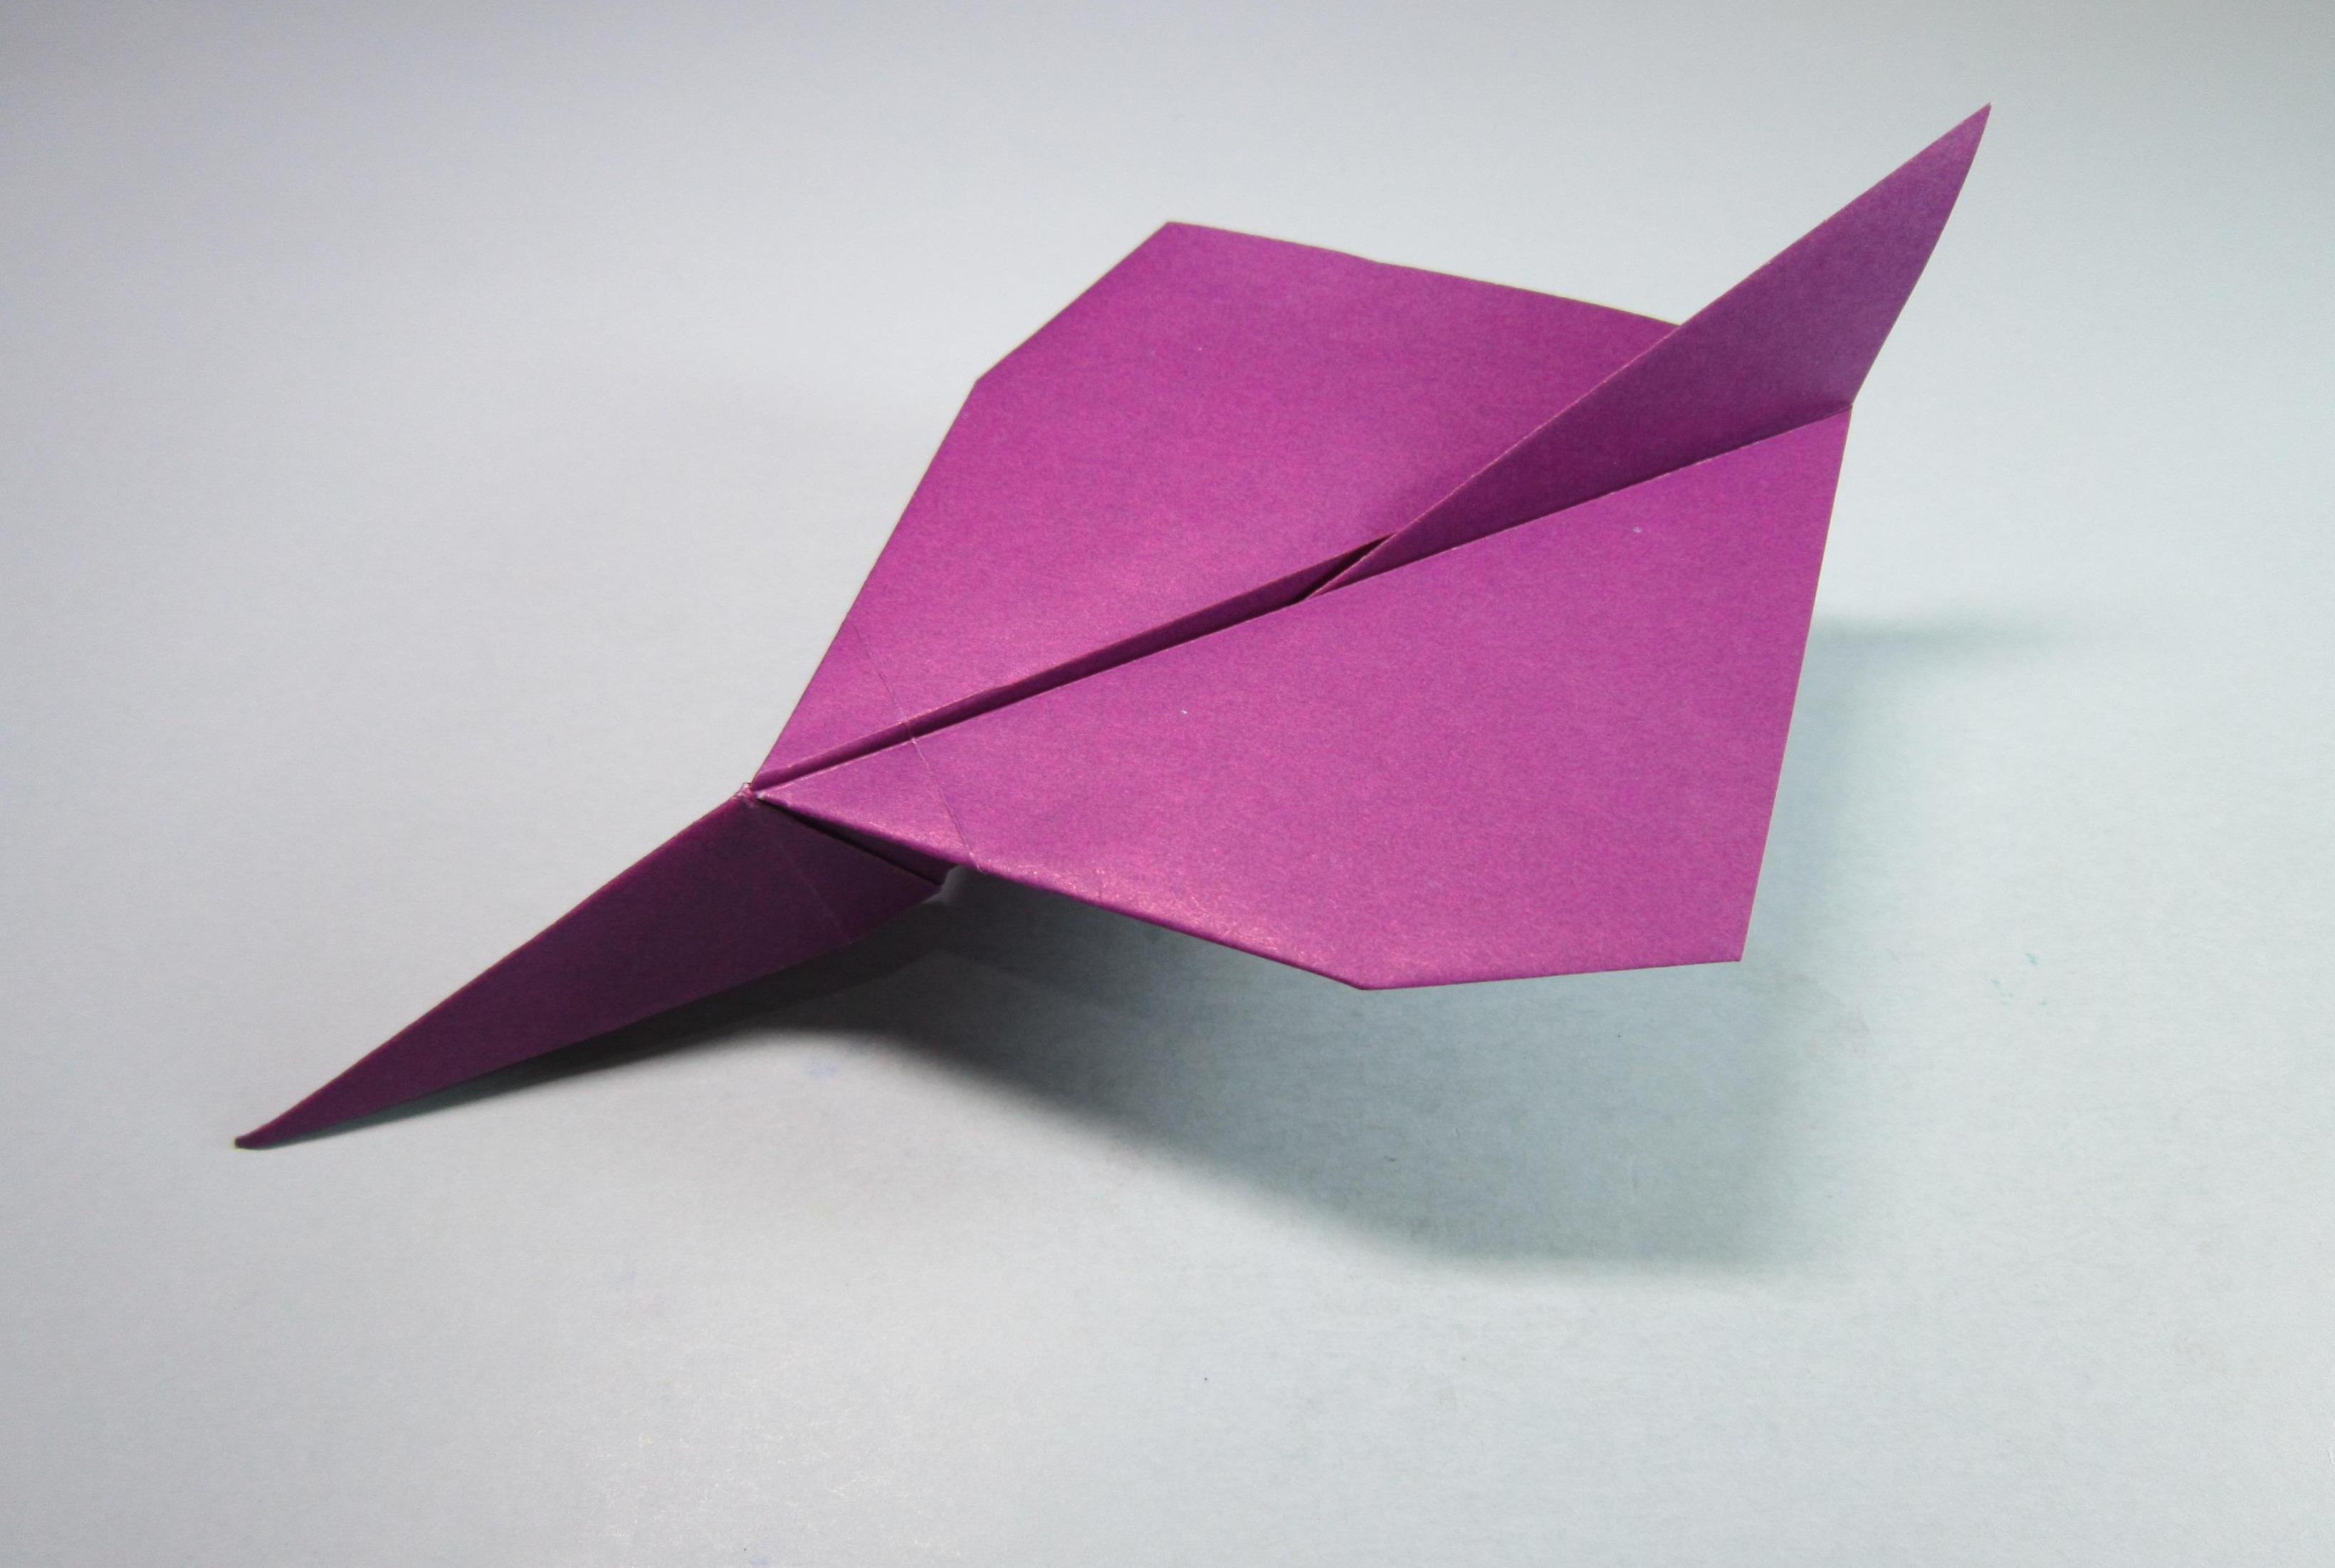 趣味手工制作纸飞机,一张正方形纸就能折出漂亮的飞机,折纸大全